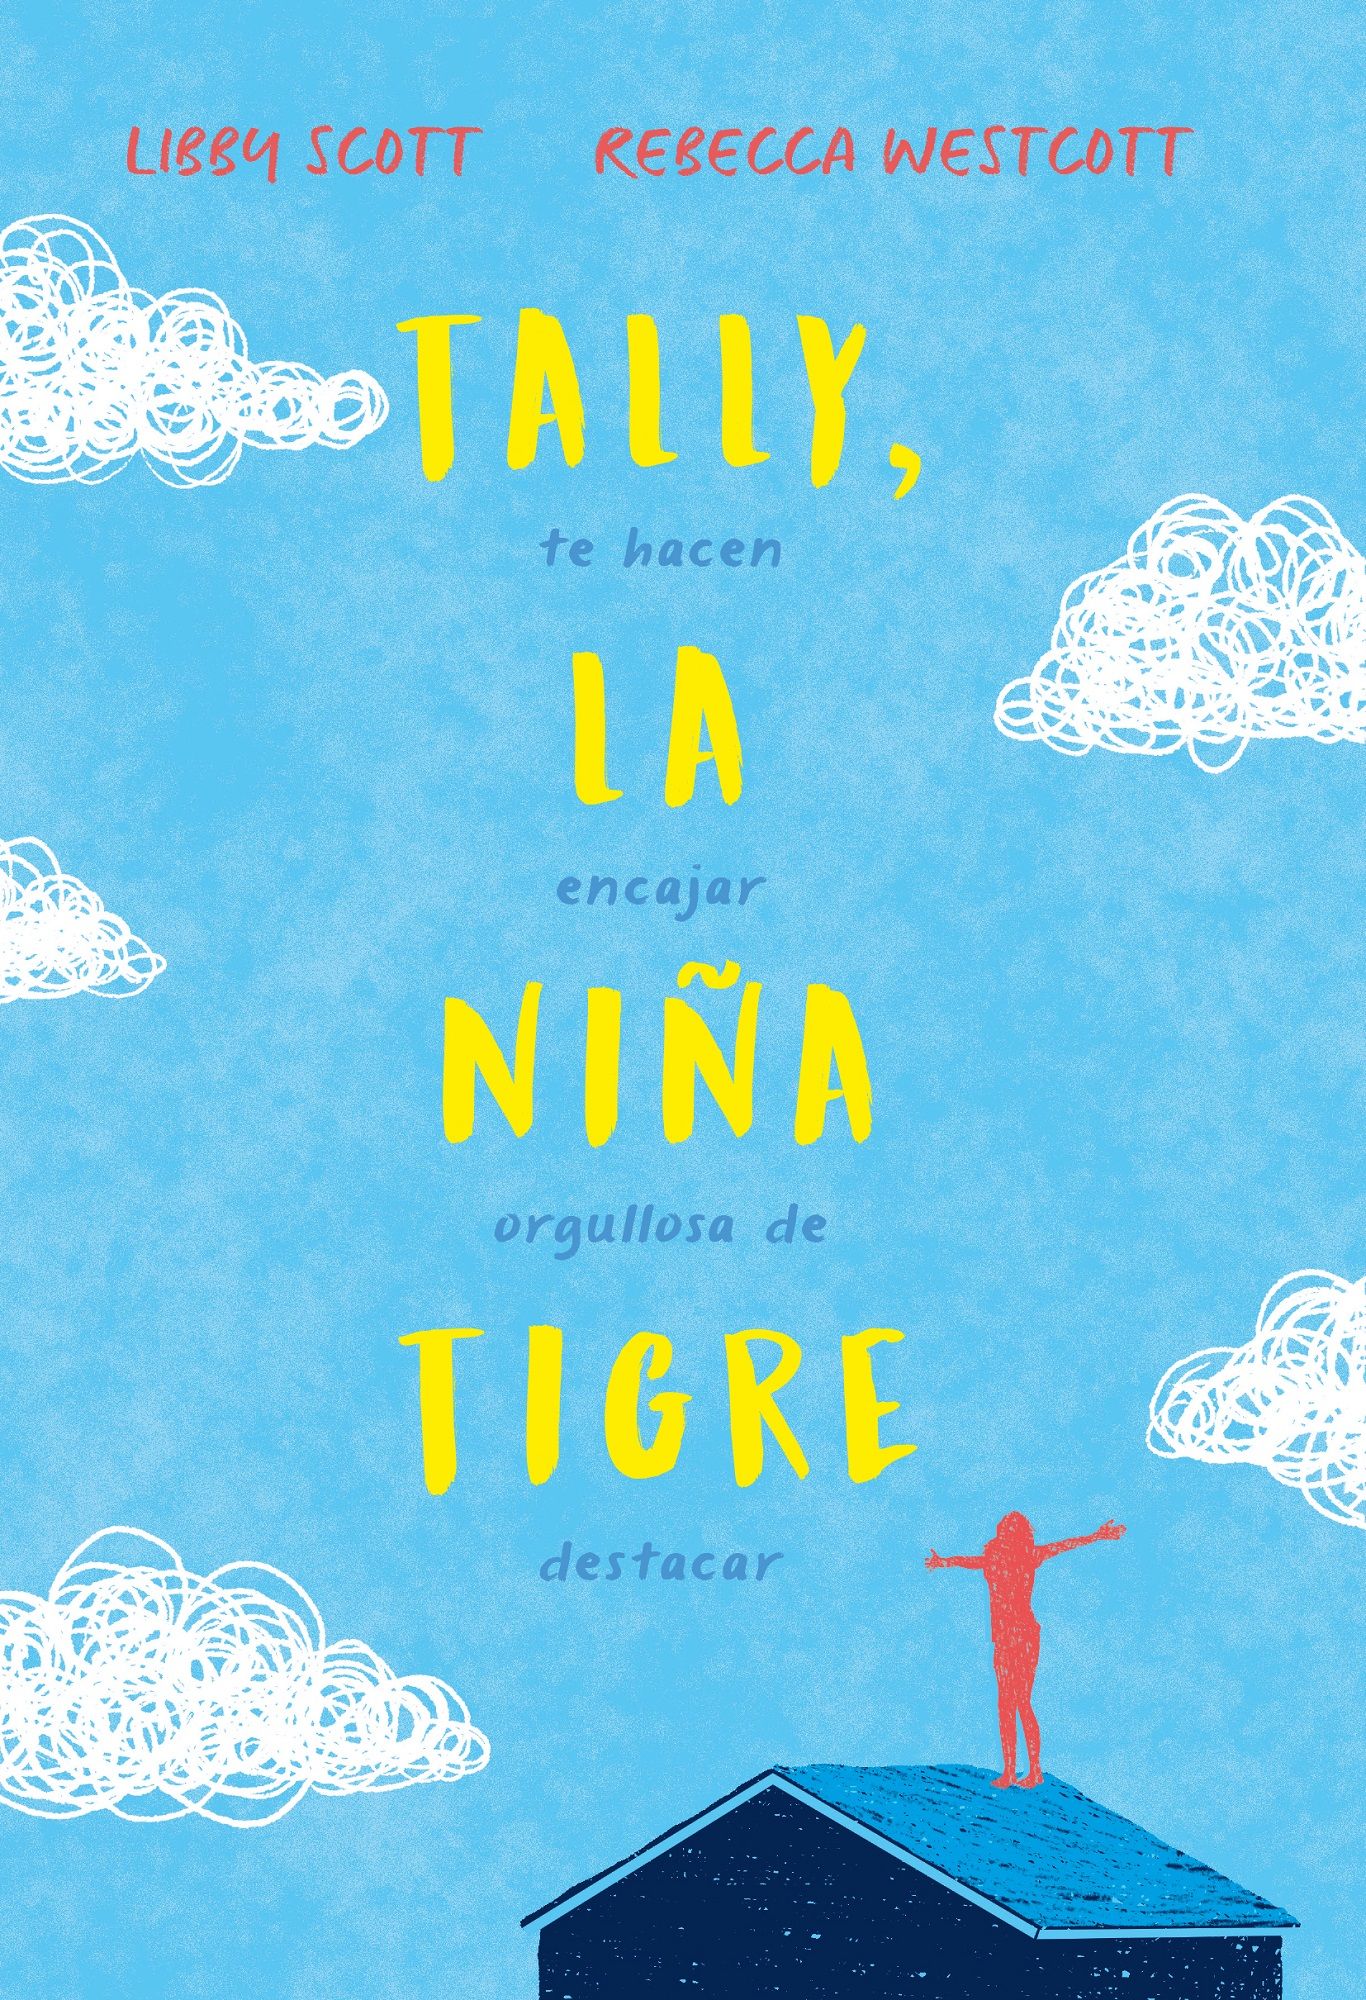 TALLY, LA NIÑA TIGRE